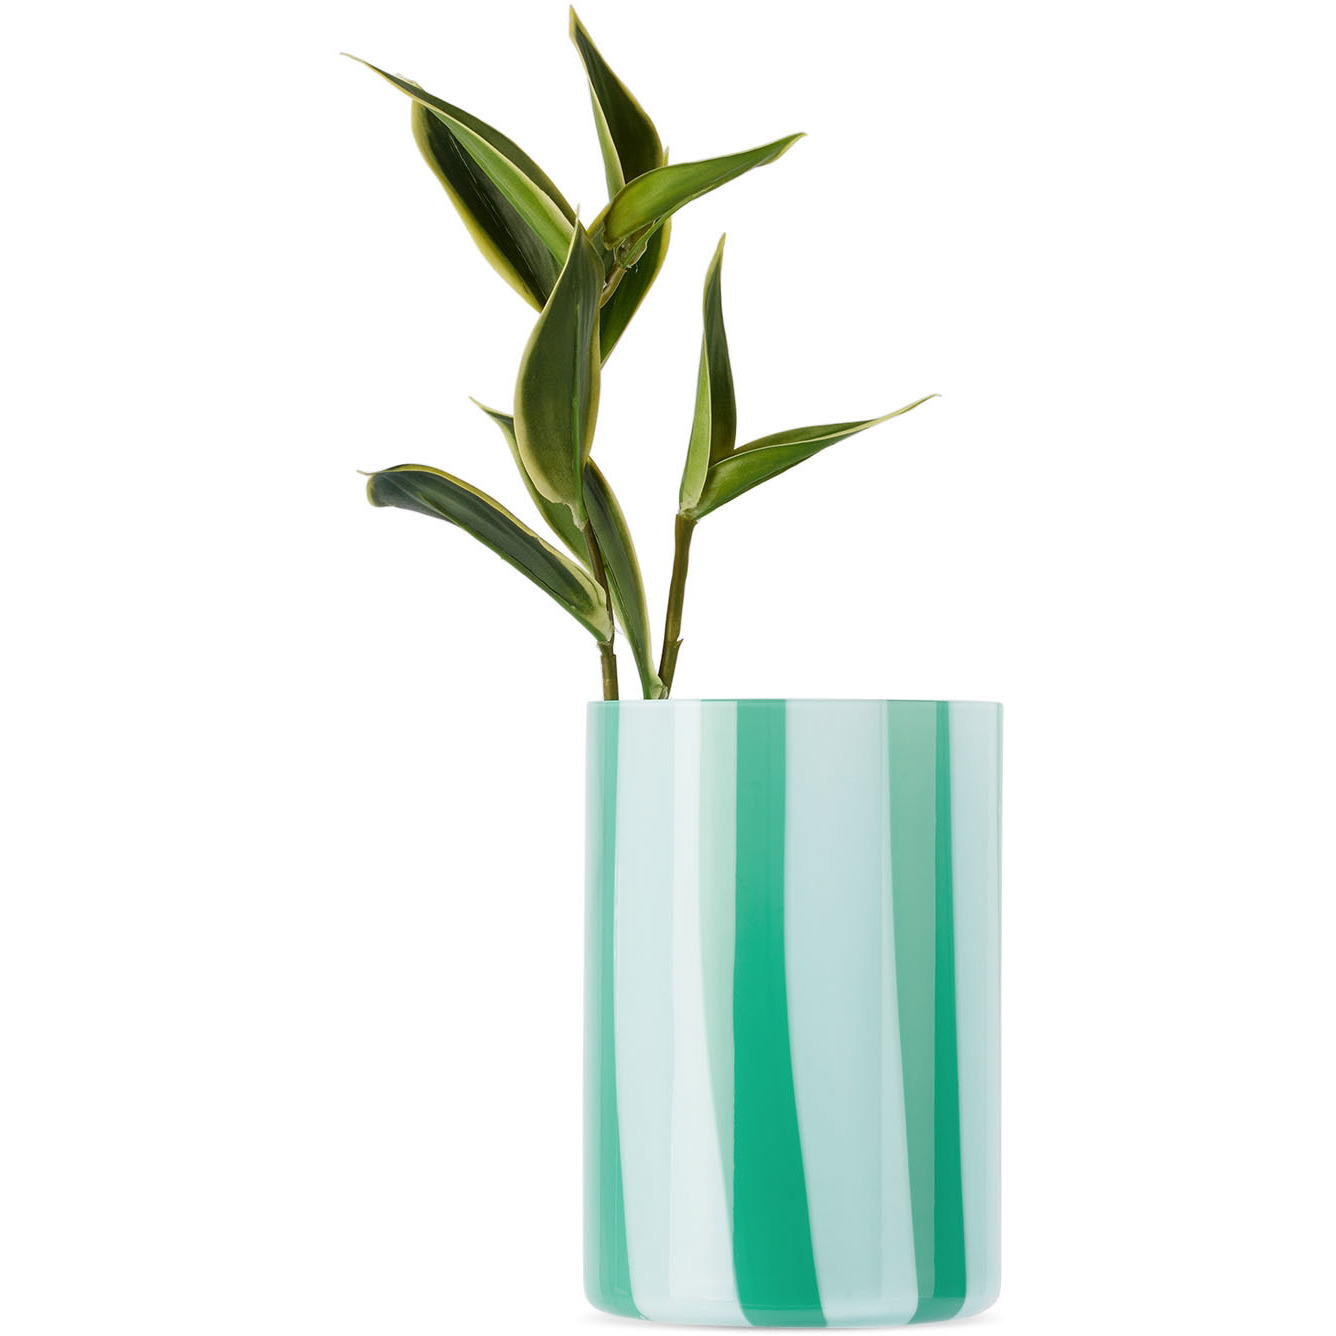 SUNNEI Blue & Green Murano Glass Vase - image 1